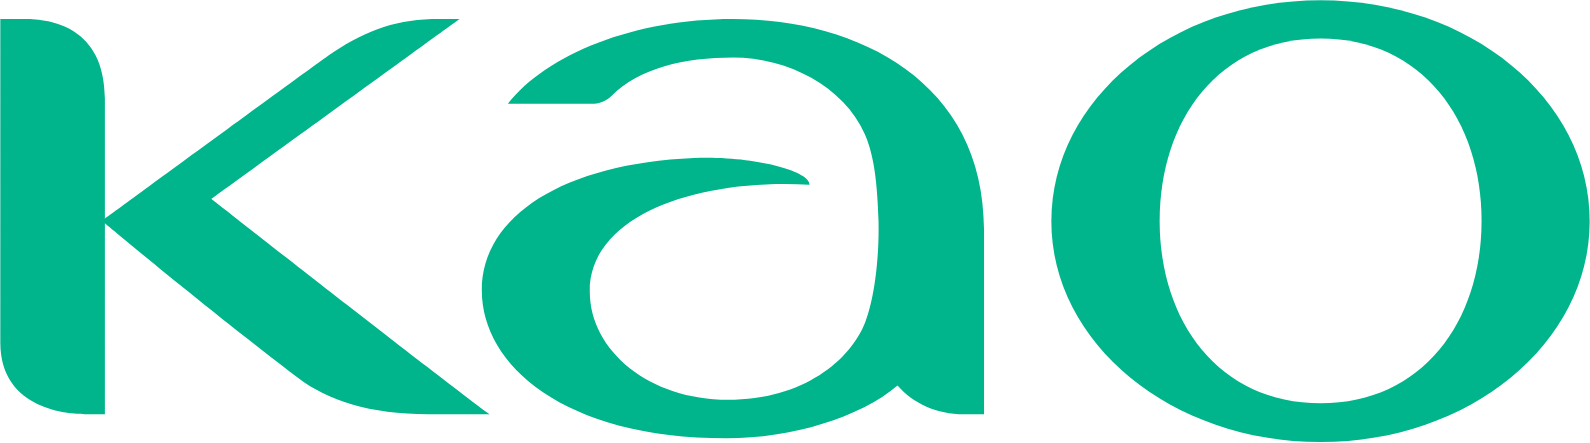 Kaō logo (transparent PNG)